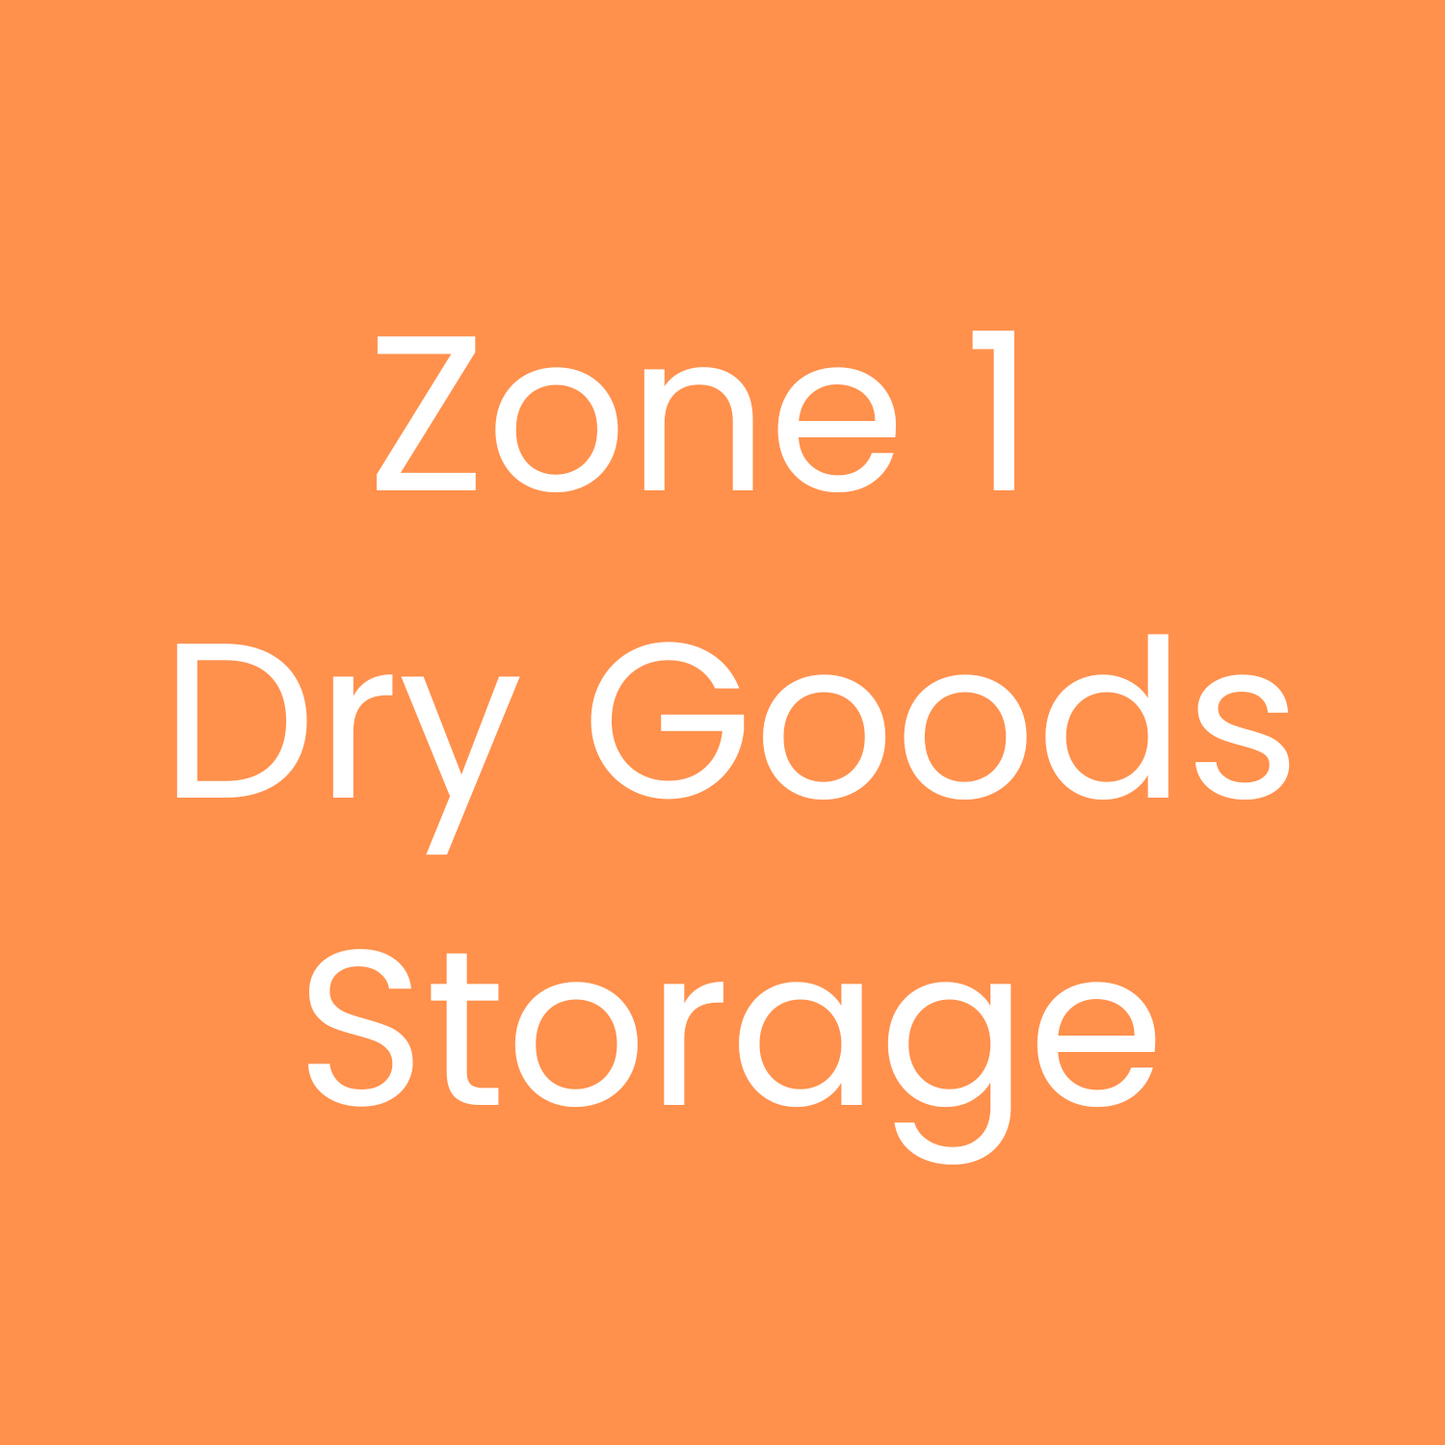 Zone 1 Dry Goods Storage